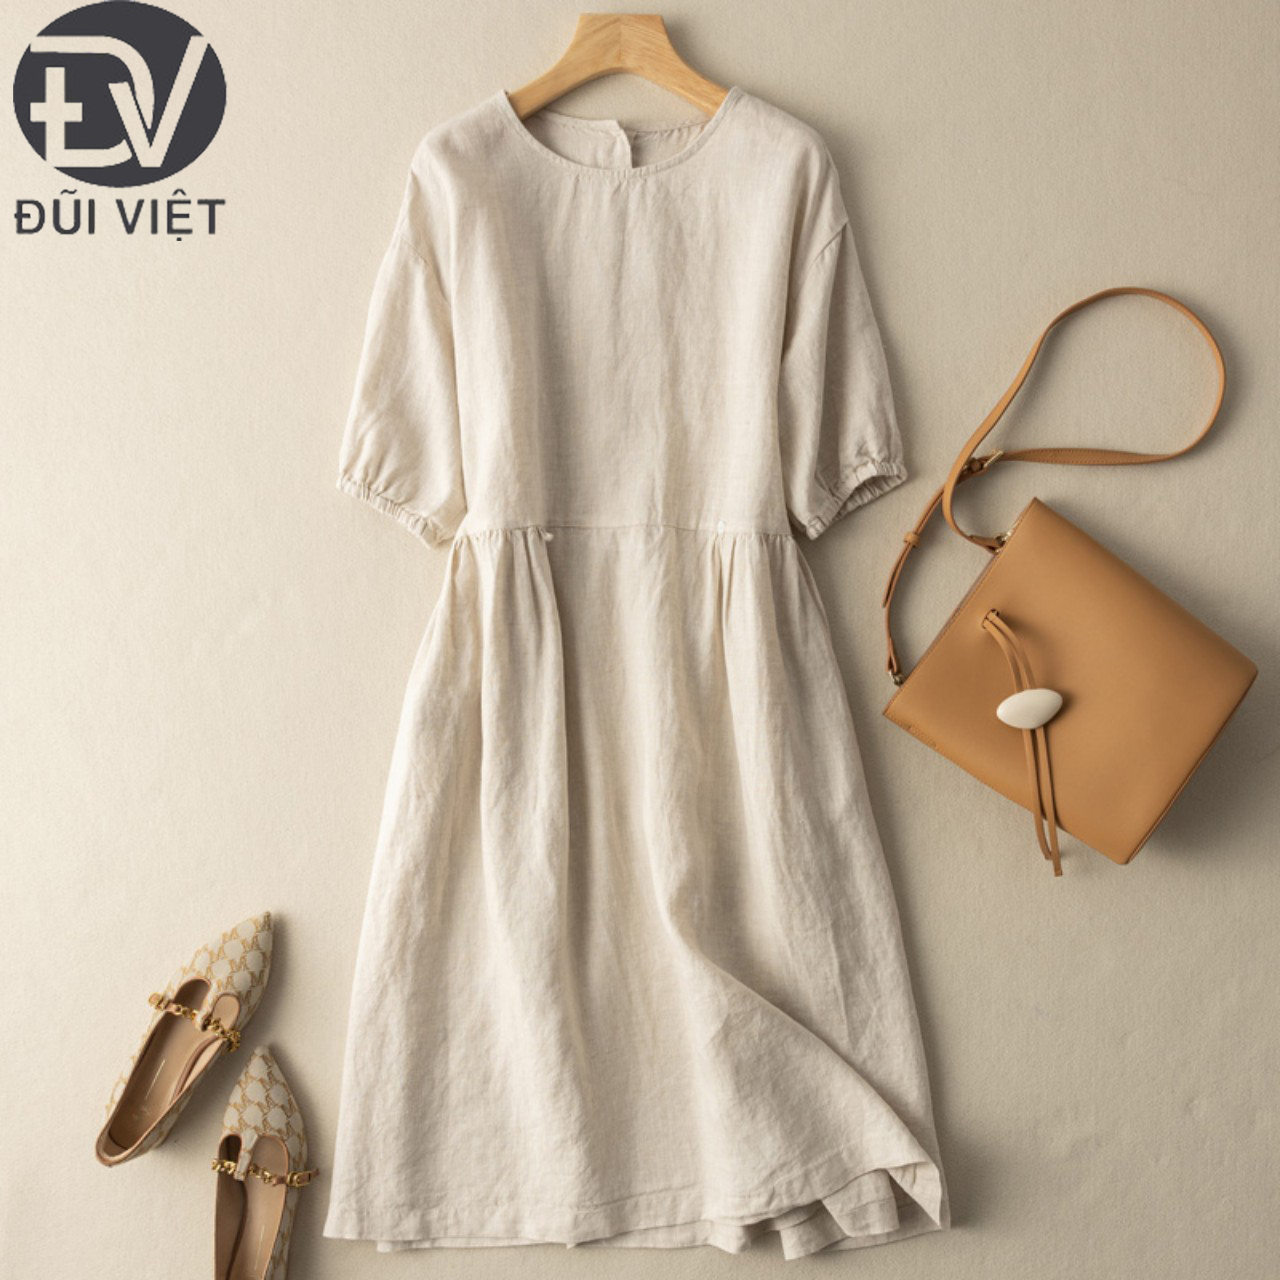 Đầm linen dáng suông Trơn Thời Trang Thanh Lịch Phong Cách Hàn Quốc - Đũi Việt DV188